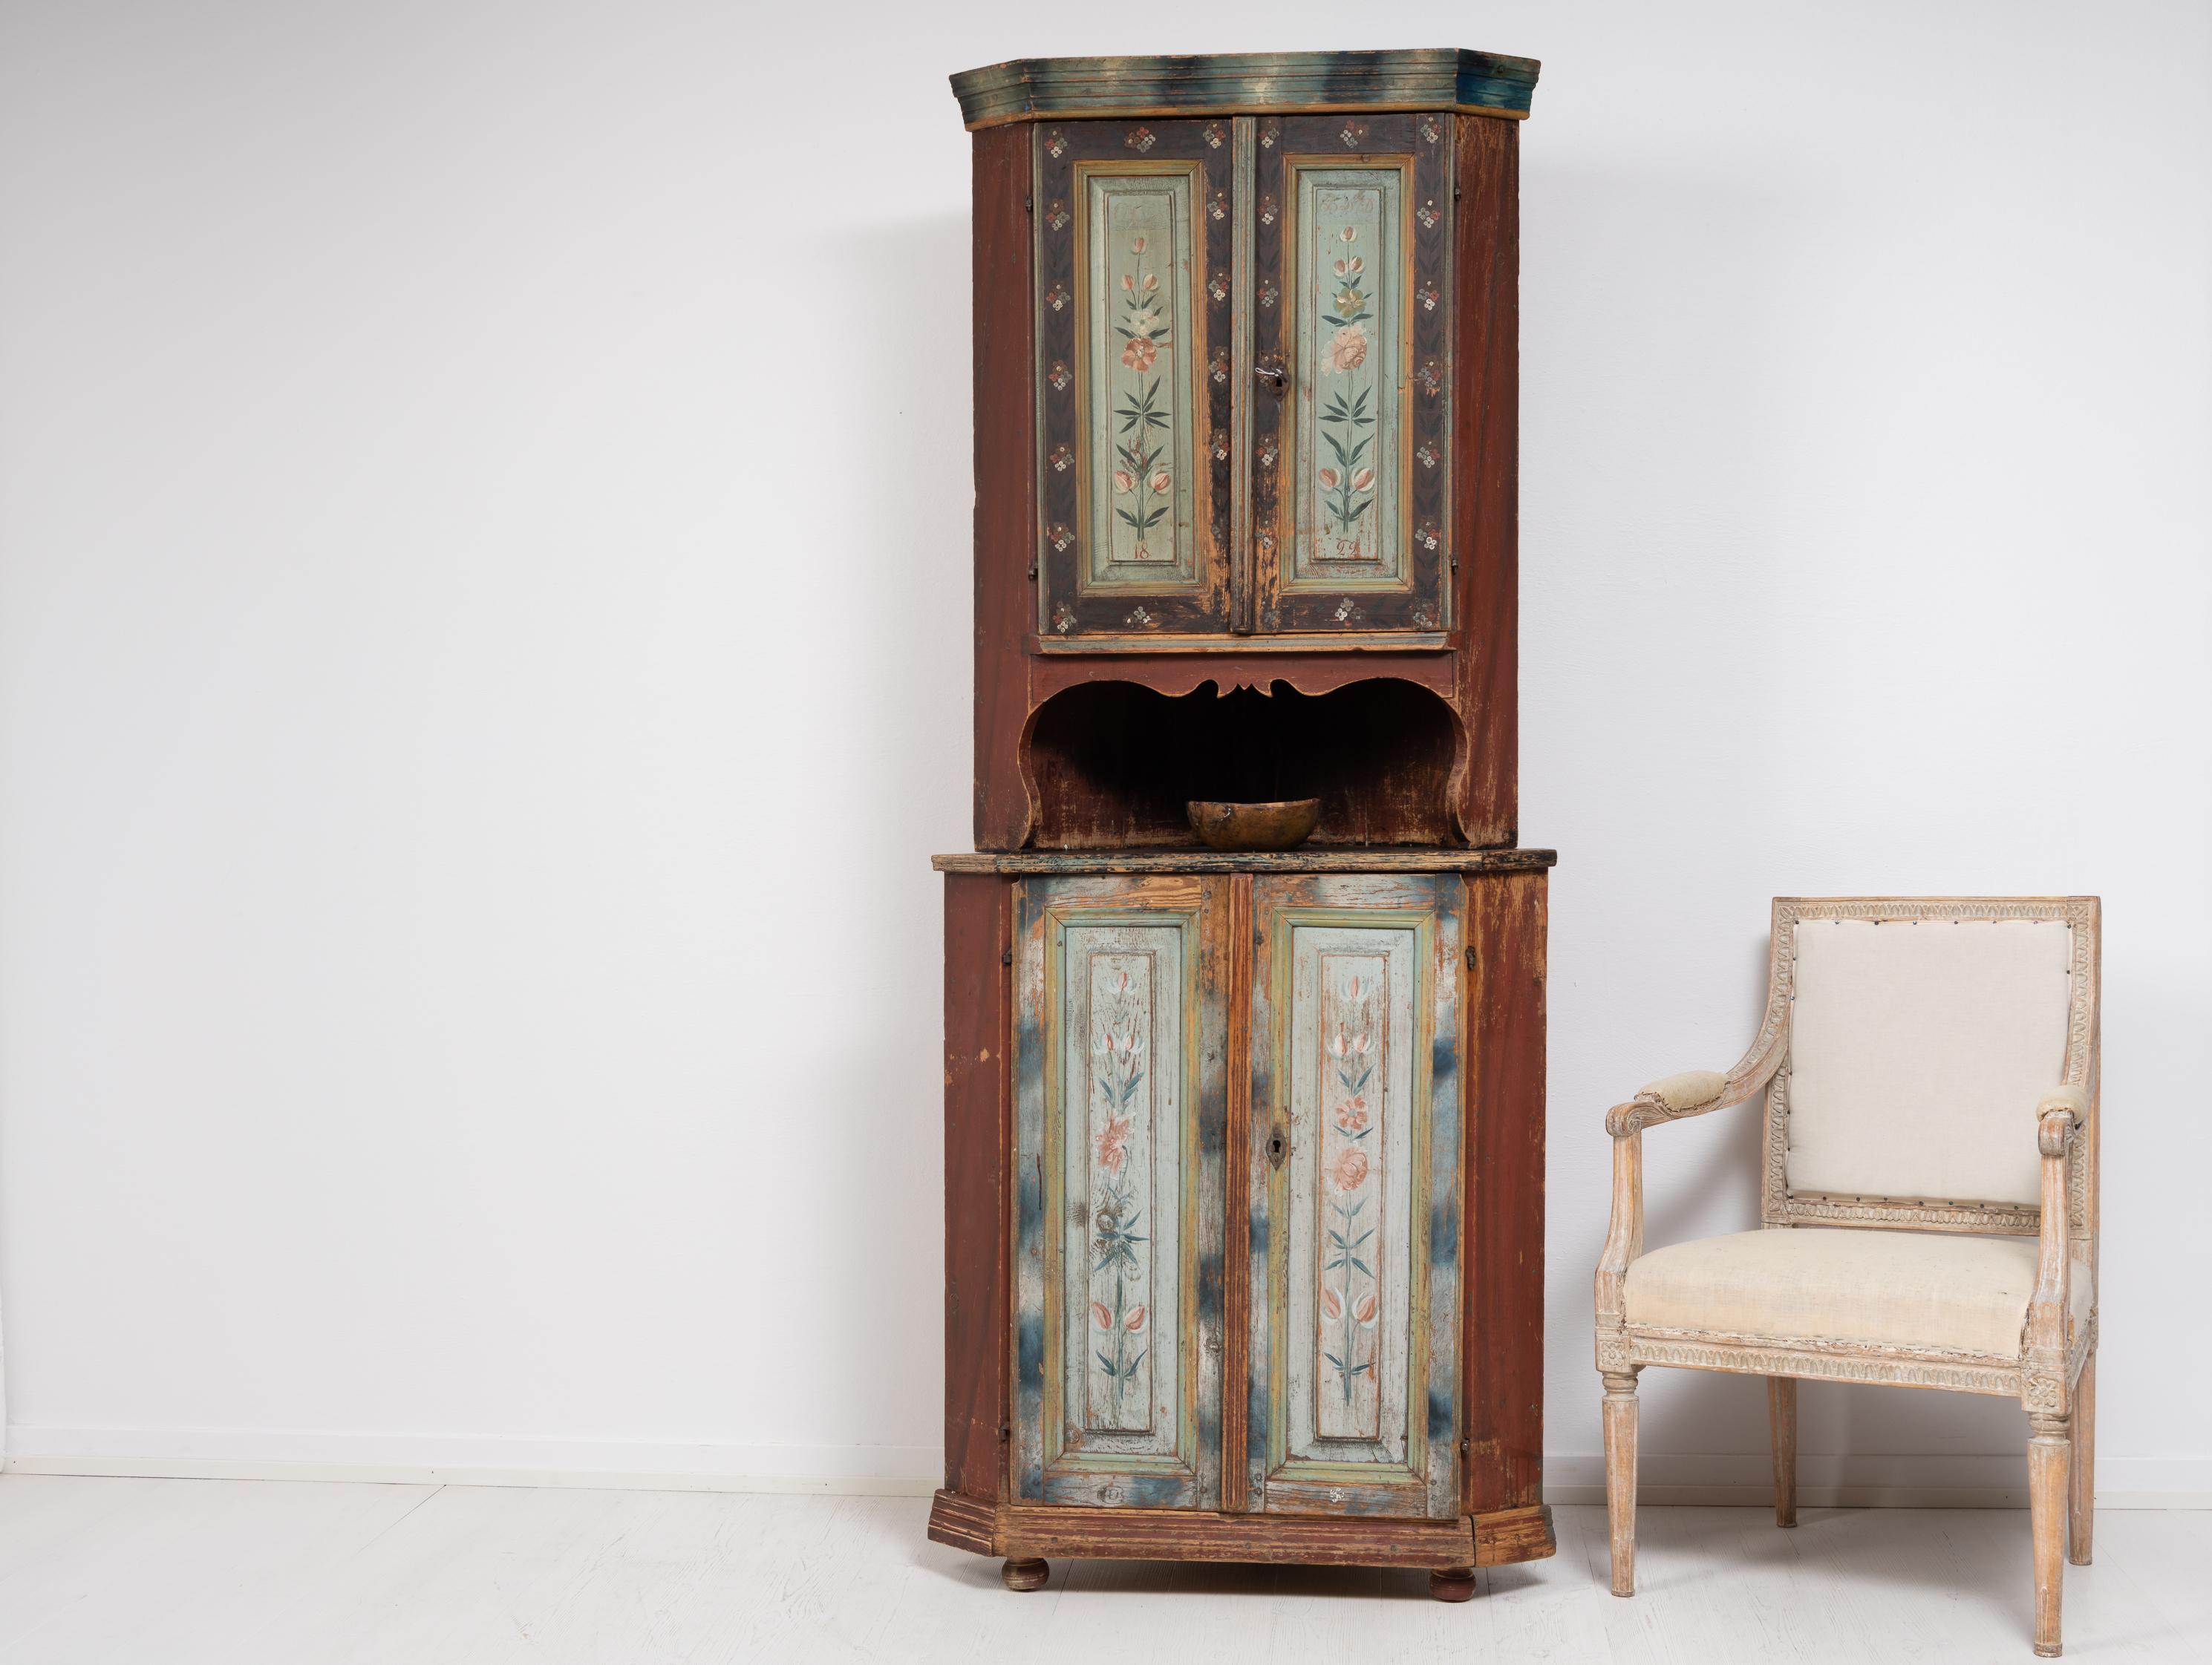 Seltener Eckschrank aus Nordschweden, hergestellt in den ersten Jahren des 19. Jahrhunderts, 1810 bis 1820. Der Schrank ist aus Kiefernholz und besteht aus zwei Teilen. Es hat die ursprüngliche Dekoration Farbe mit der authentischen Patina der Zeit.